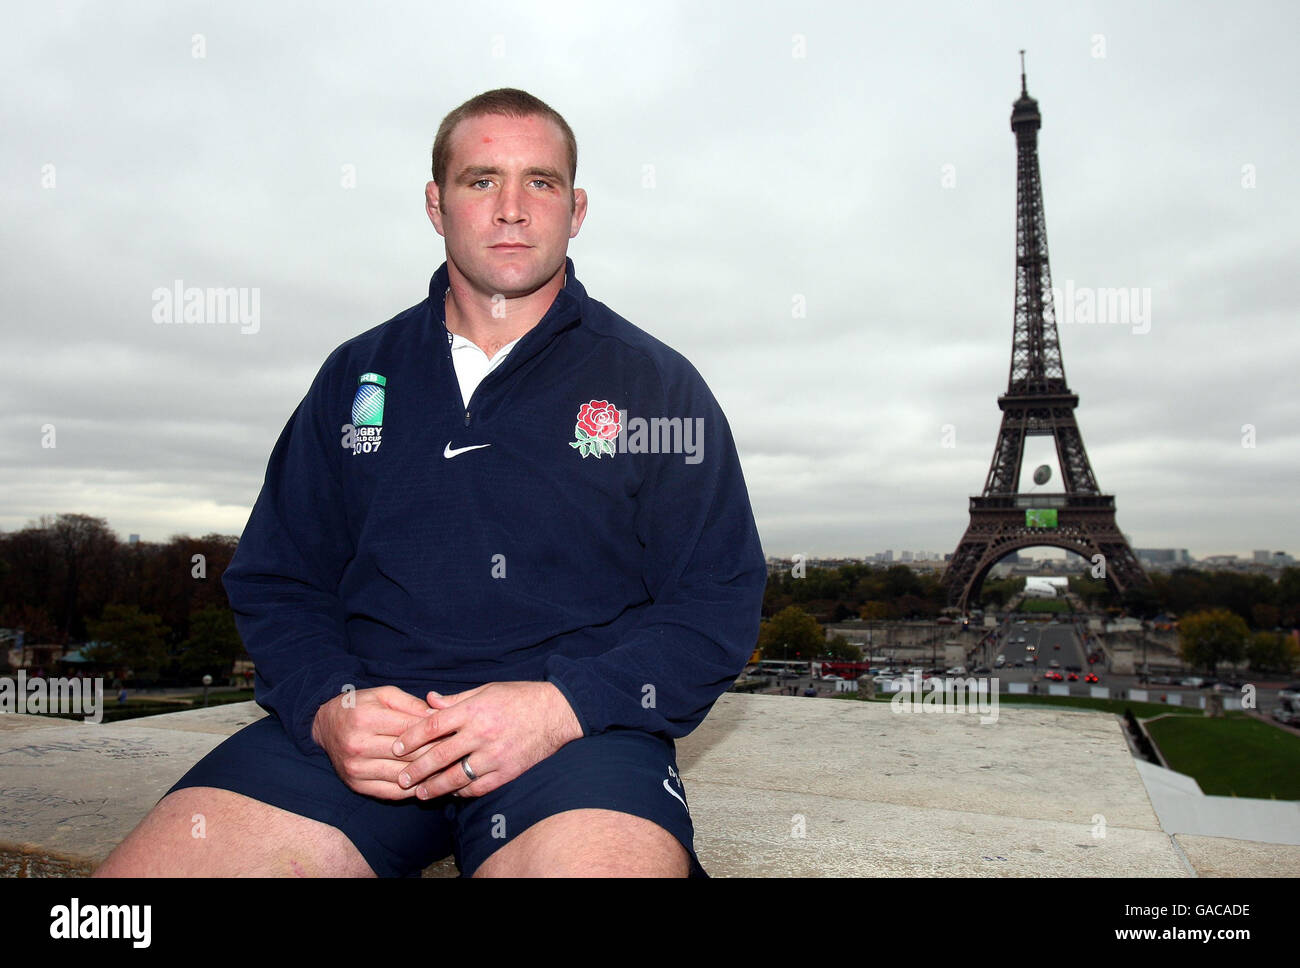 Rugby Union - IRB Rugby World Cup 2007 - England Pressekonferenz und Training - Paris. Der englische Kapitän Phil Vickery posiert für Fotos auf dem Eiffelturm, Paris, Frankreich. Stockfoto